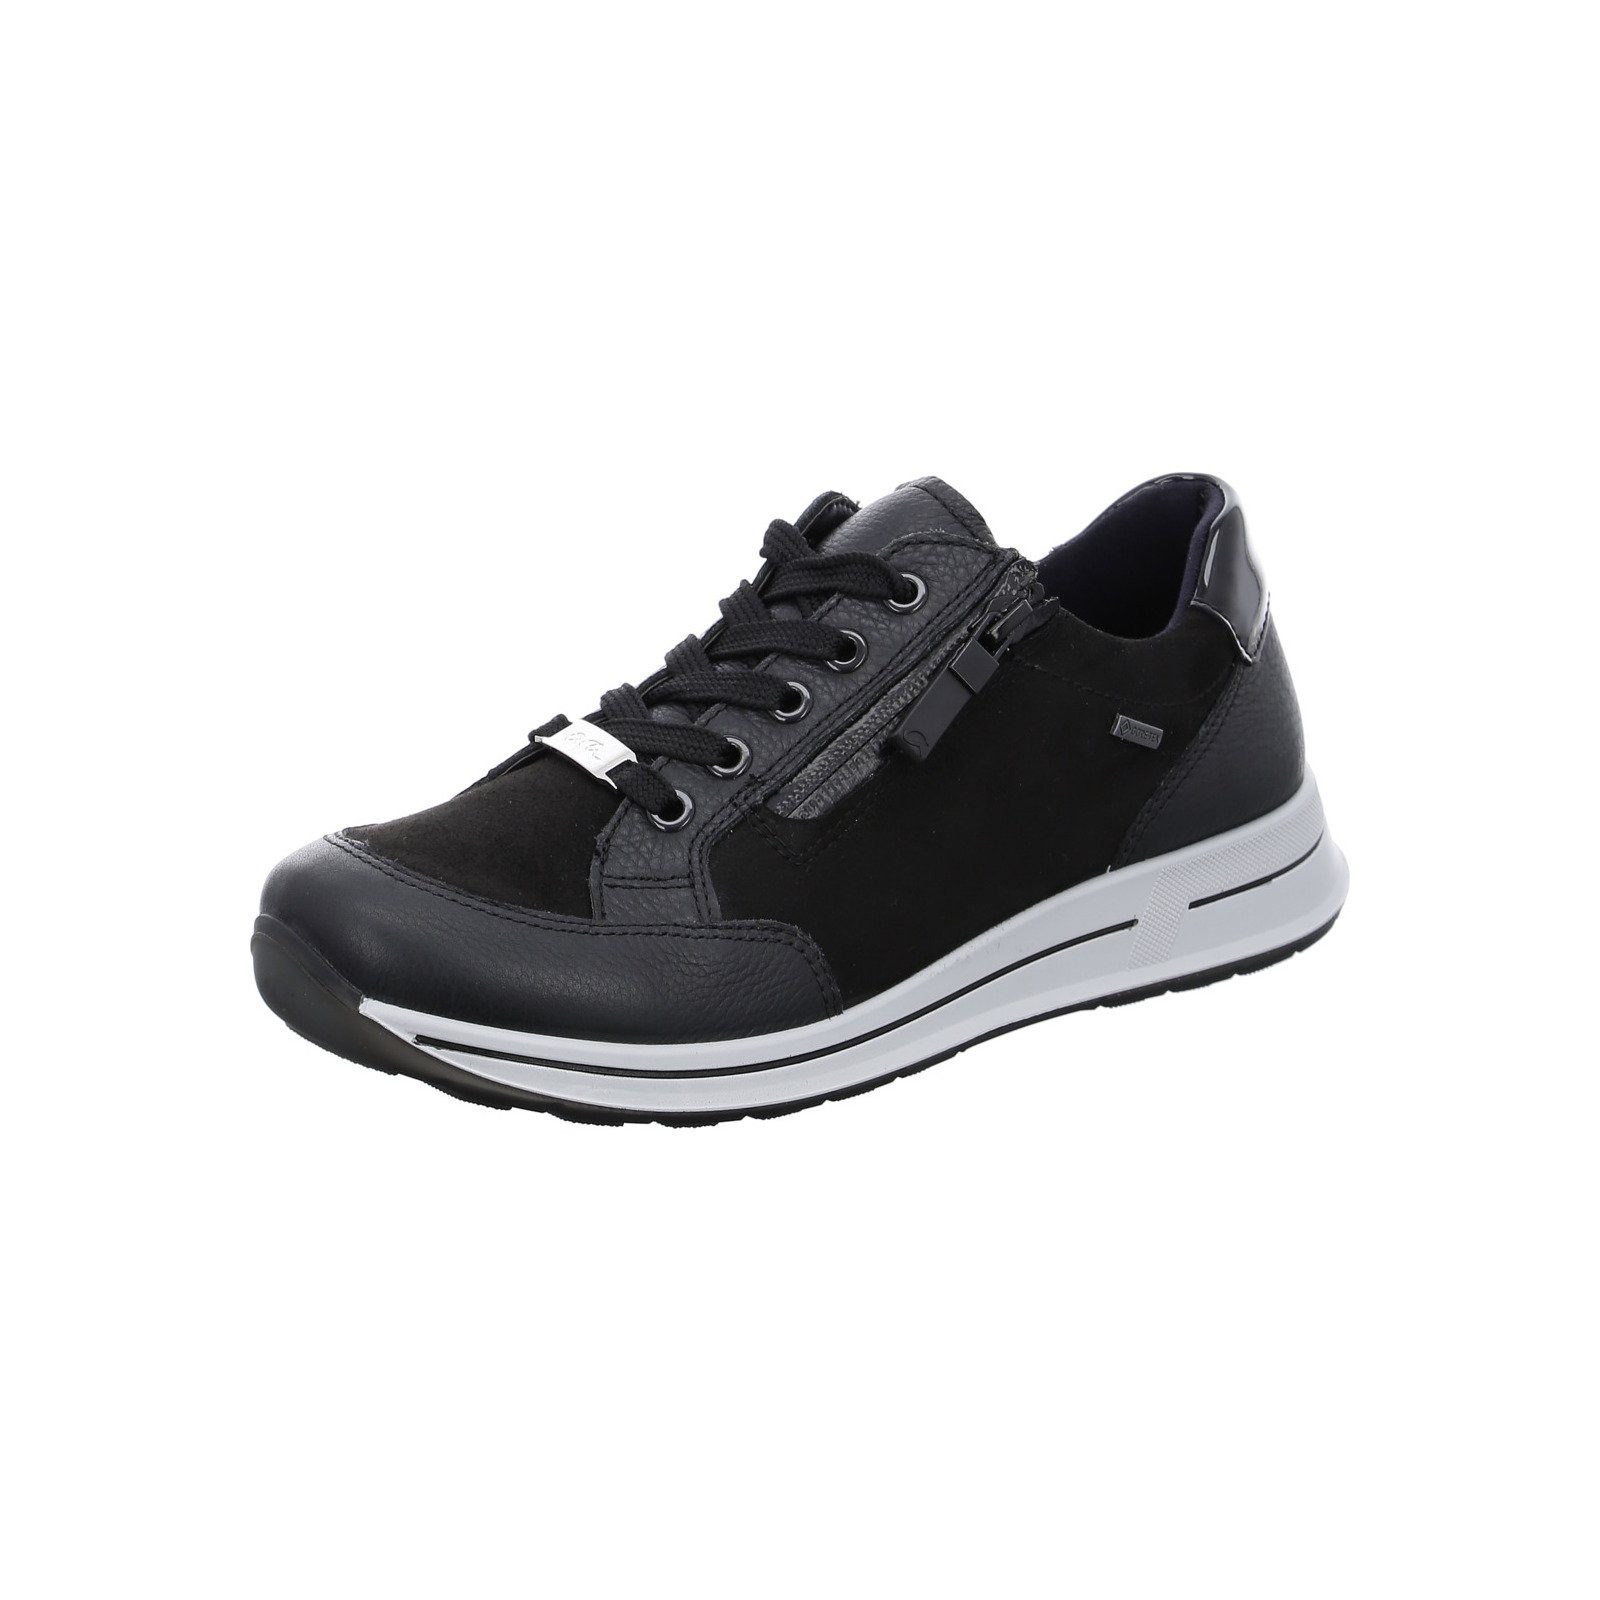 Ara Osaka - Damen Schuhe Schnürschuh Sneaker Leder schwarz